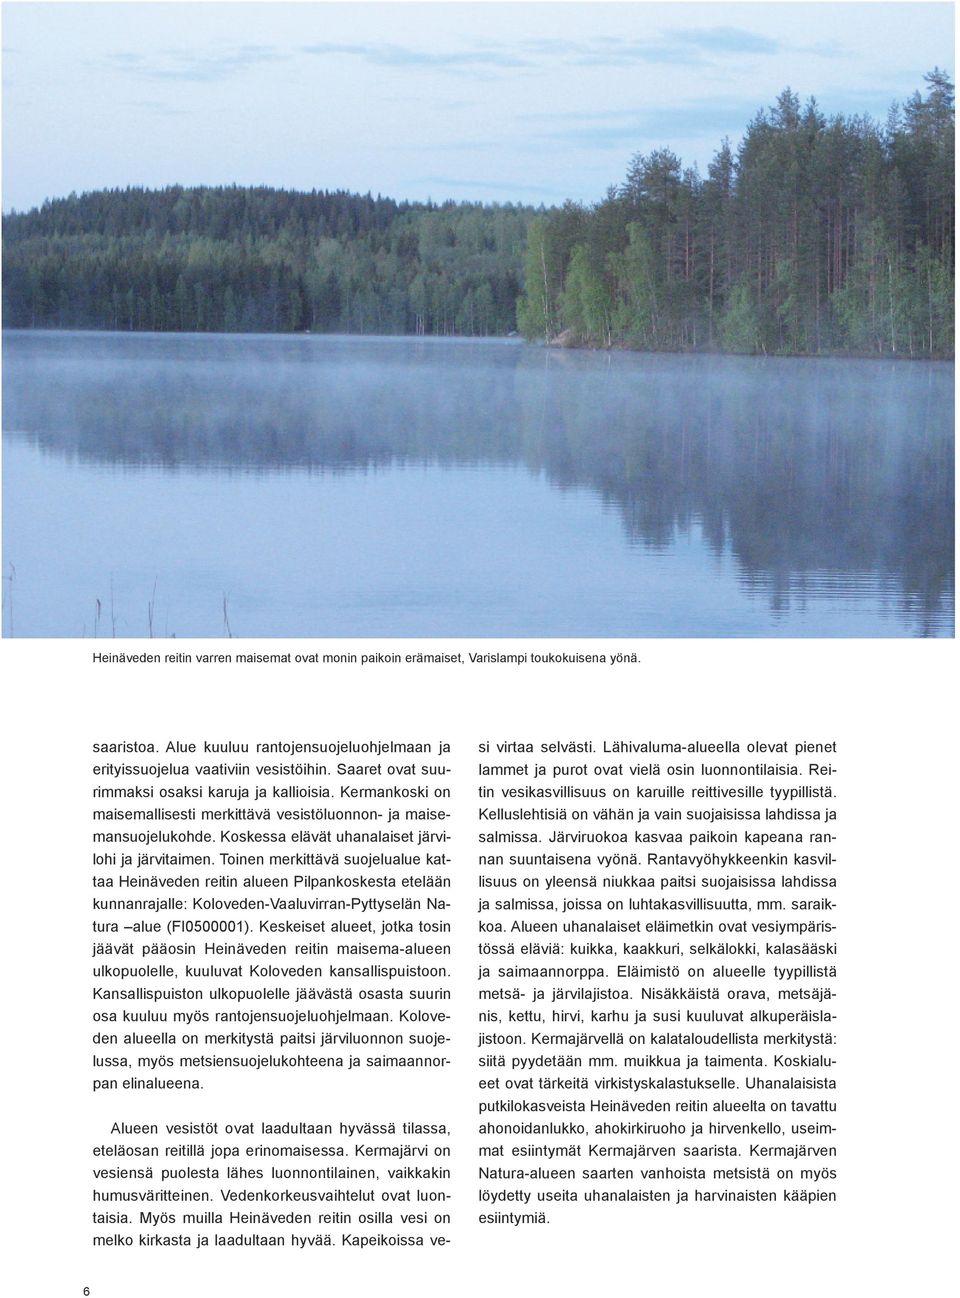 Toinen merkittävä suojelualue kattaa Heinäveden reitin alueen Pilpankoskesta etelään kunnanrajalle: Koloveden-Vaaluvirran-Pyttyselän Natura alue (FI0500001).